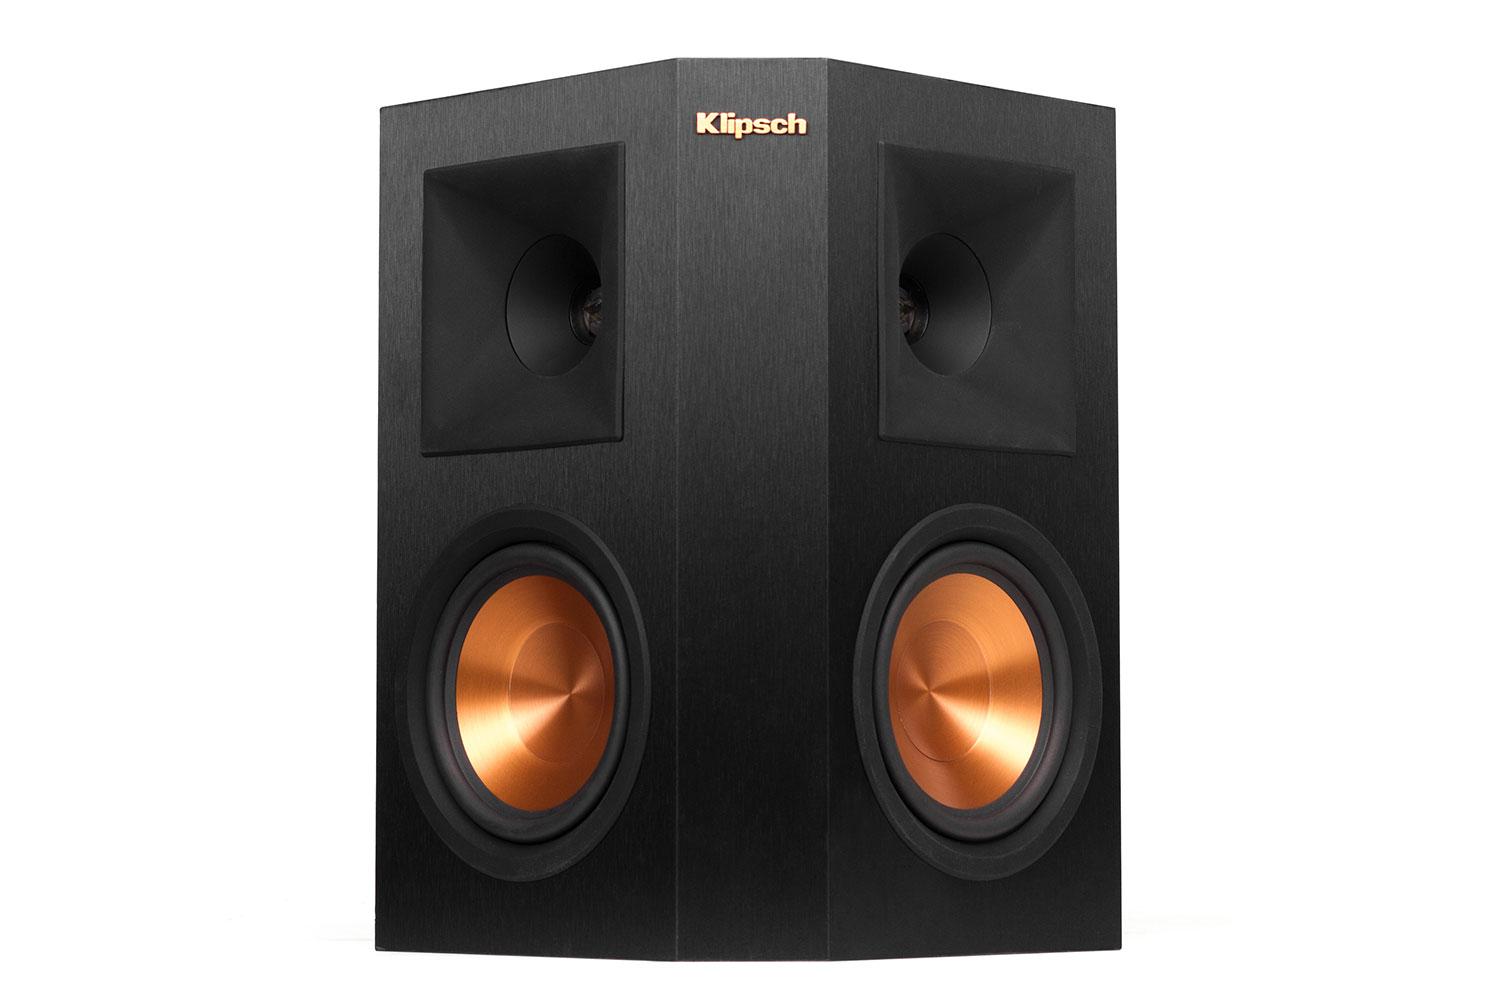 klipsch reference premier speaker system debuts at ces 2015 250s front